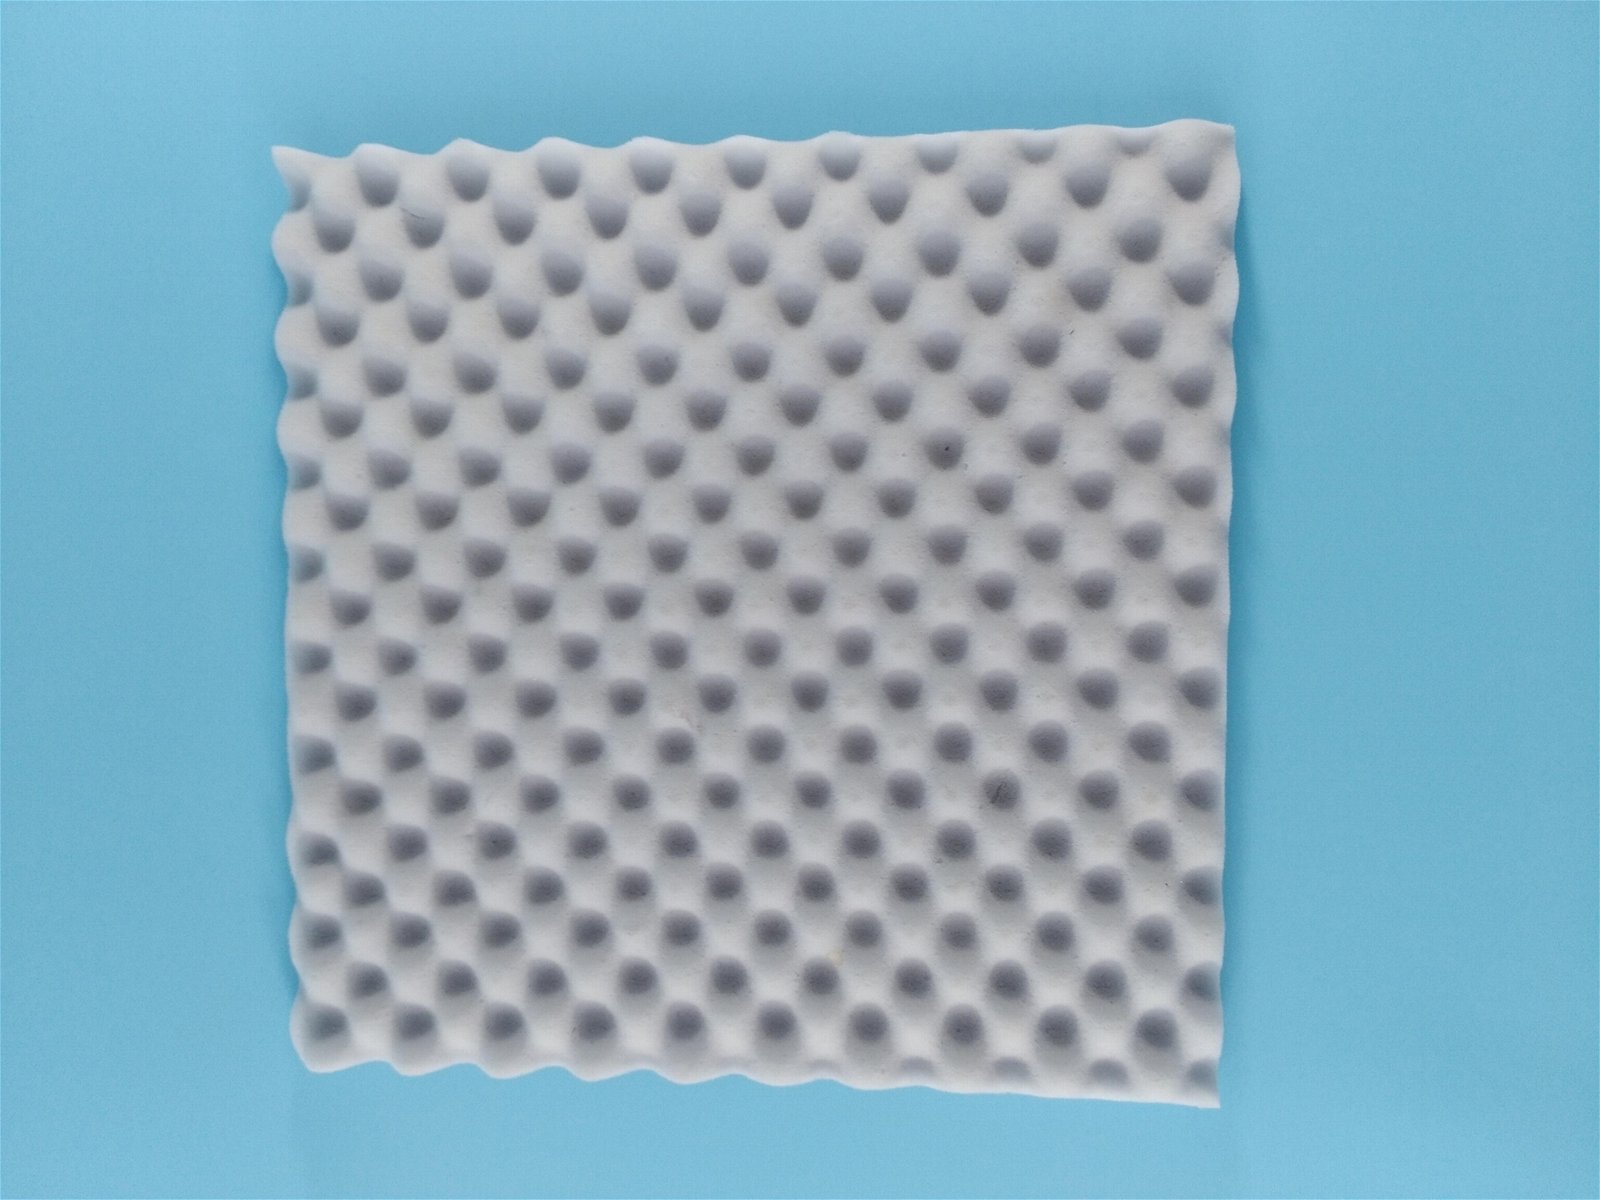 Industrial accoustic foam （sound absorption foam）